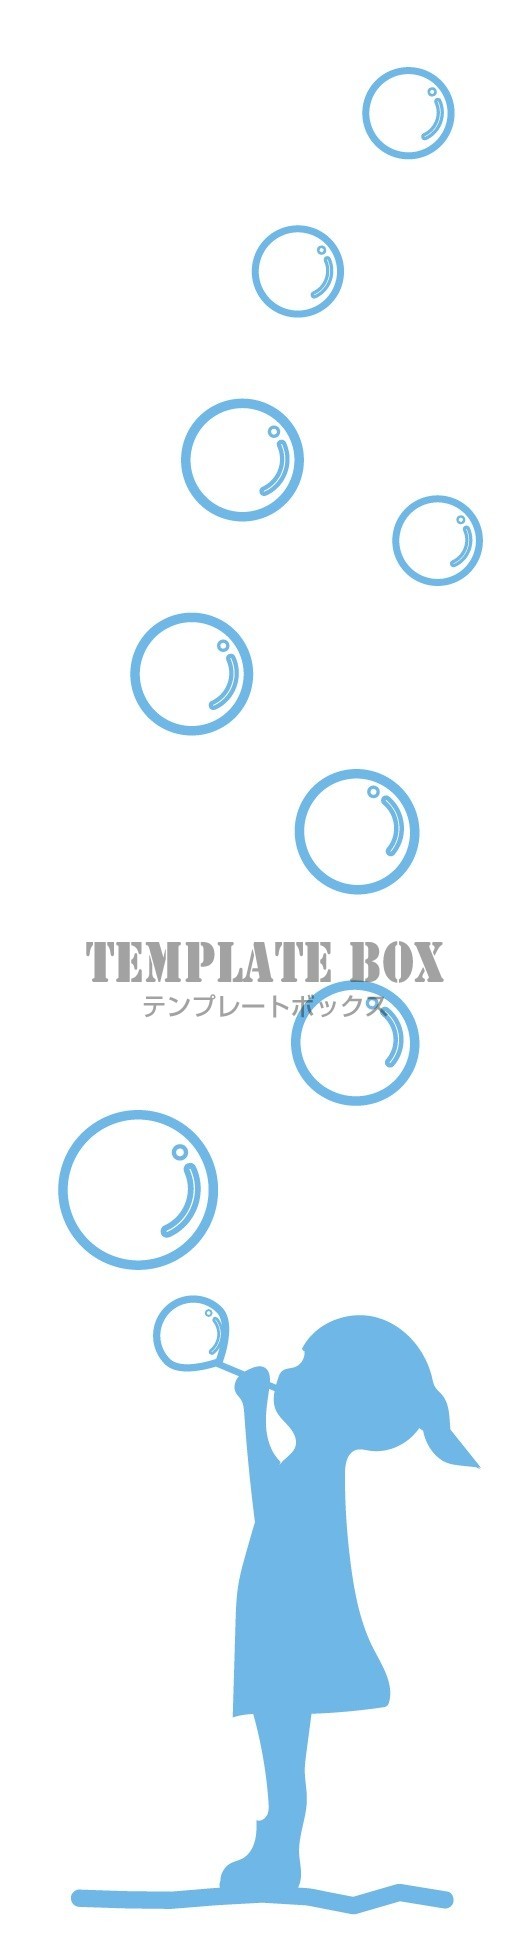 シャボン玉を楽しむ女の子のシルエット画像 無料で使えるワンポイントイラスト 無料イラスト素材 Templatebox